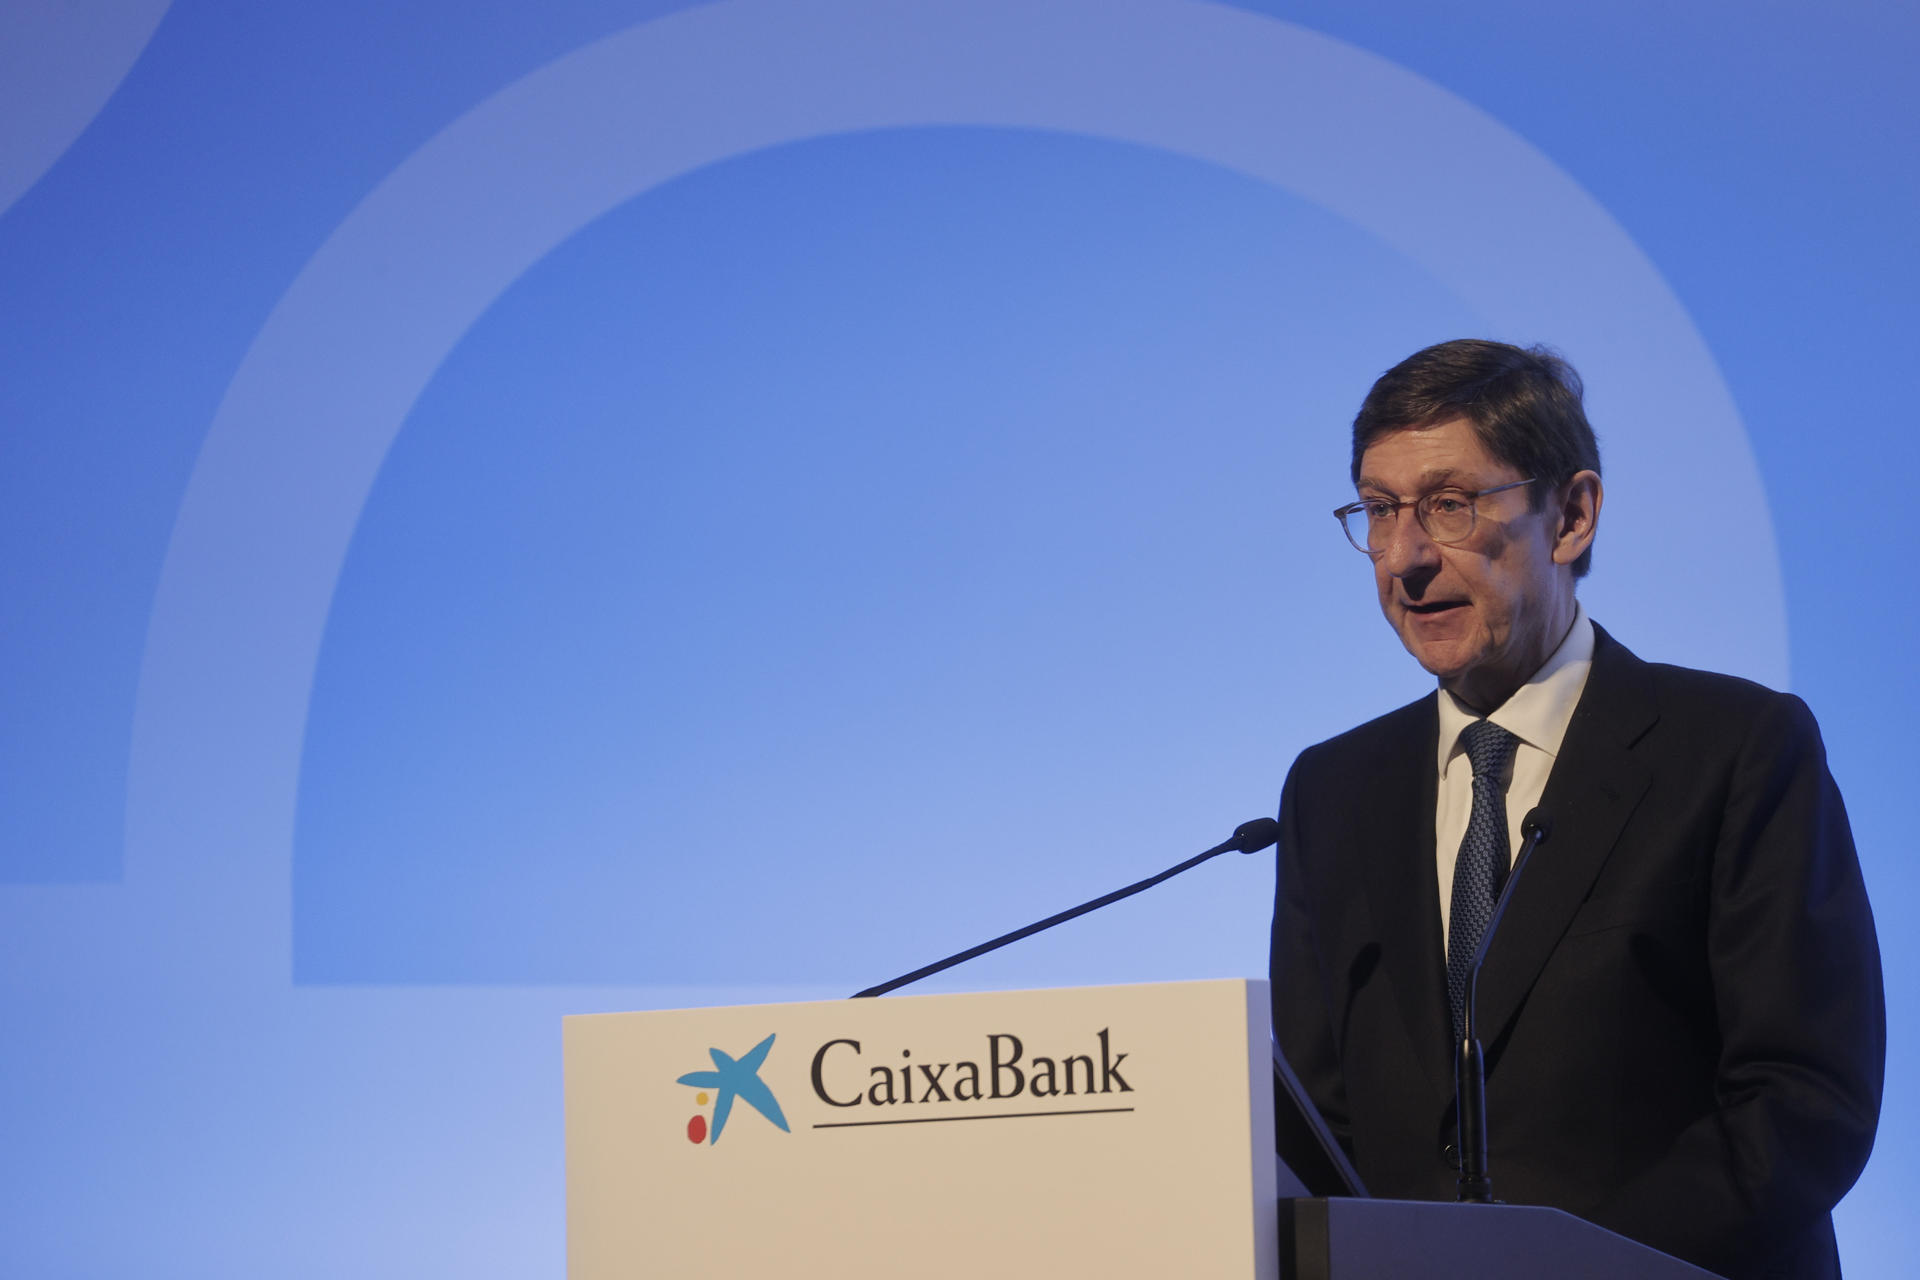 El l presidente de CaixaBank, Jose Ignacio Goirigolzarri, interviene en una junta de accionistas en Valencia.Archivo/EFE/ Manuel Bruque